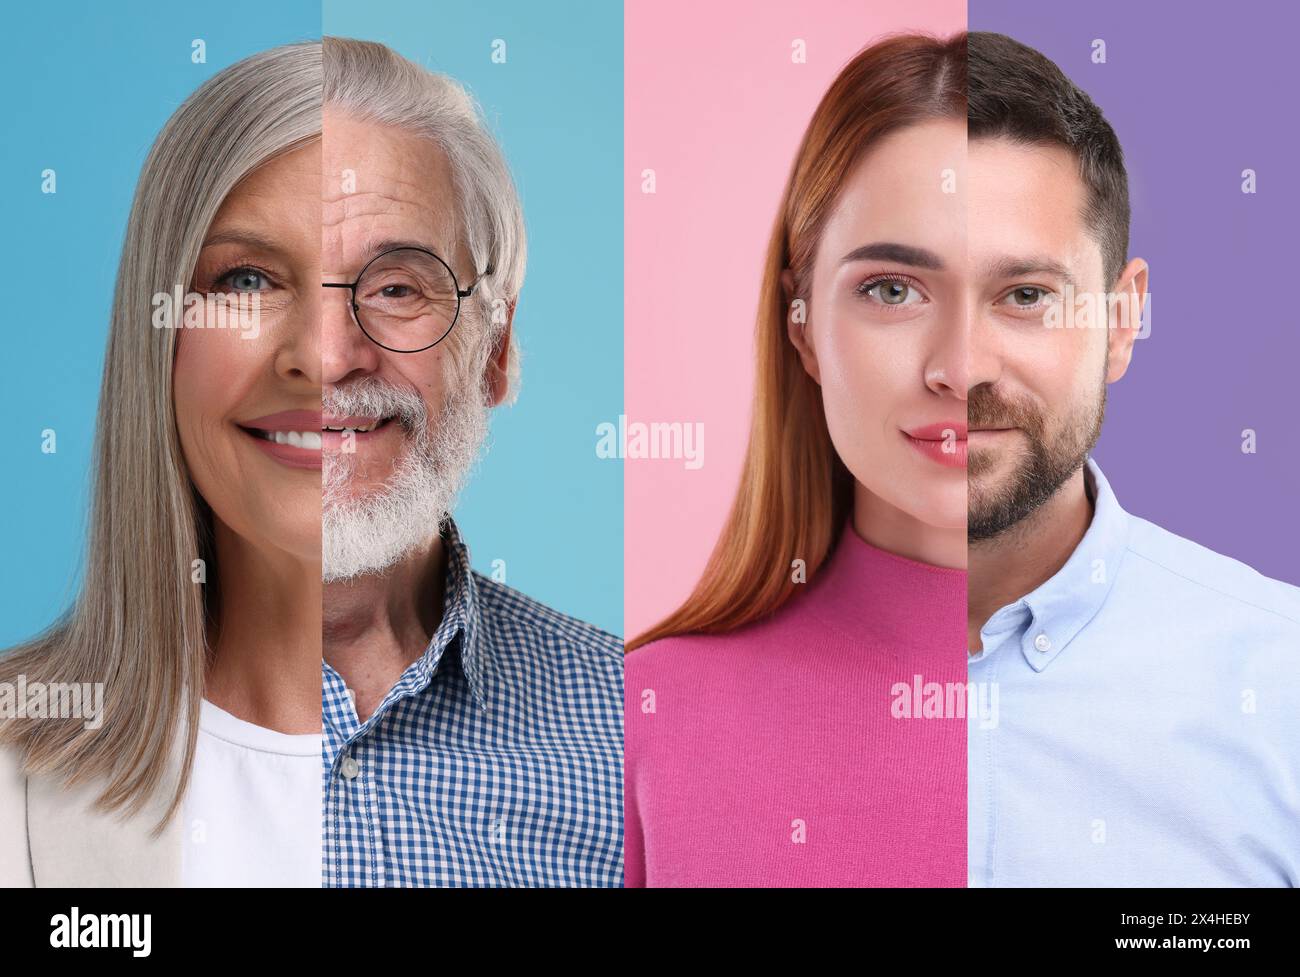 Männer und Frauen unterschiedlichen Alters mit farbigem Hintergrund. Collage mit Teilen von Fotos verschiedener Personen Stockfoto